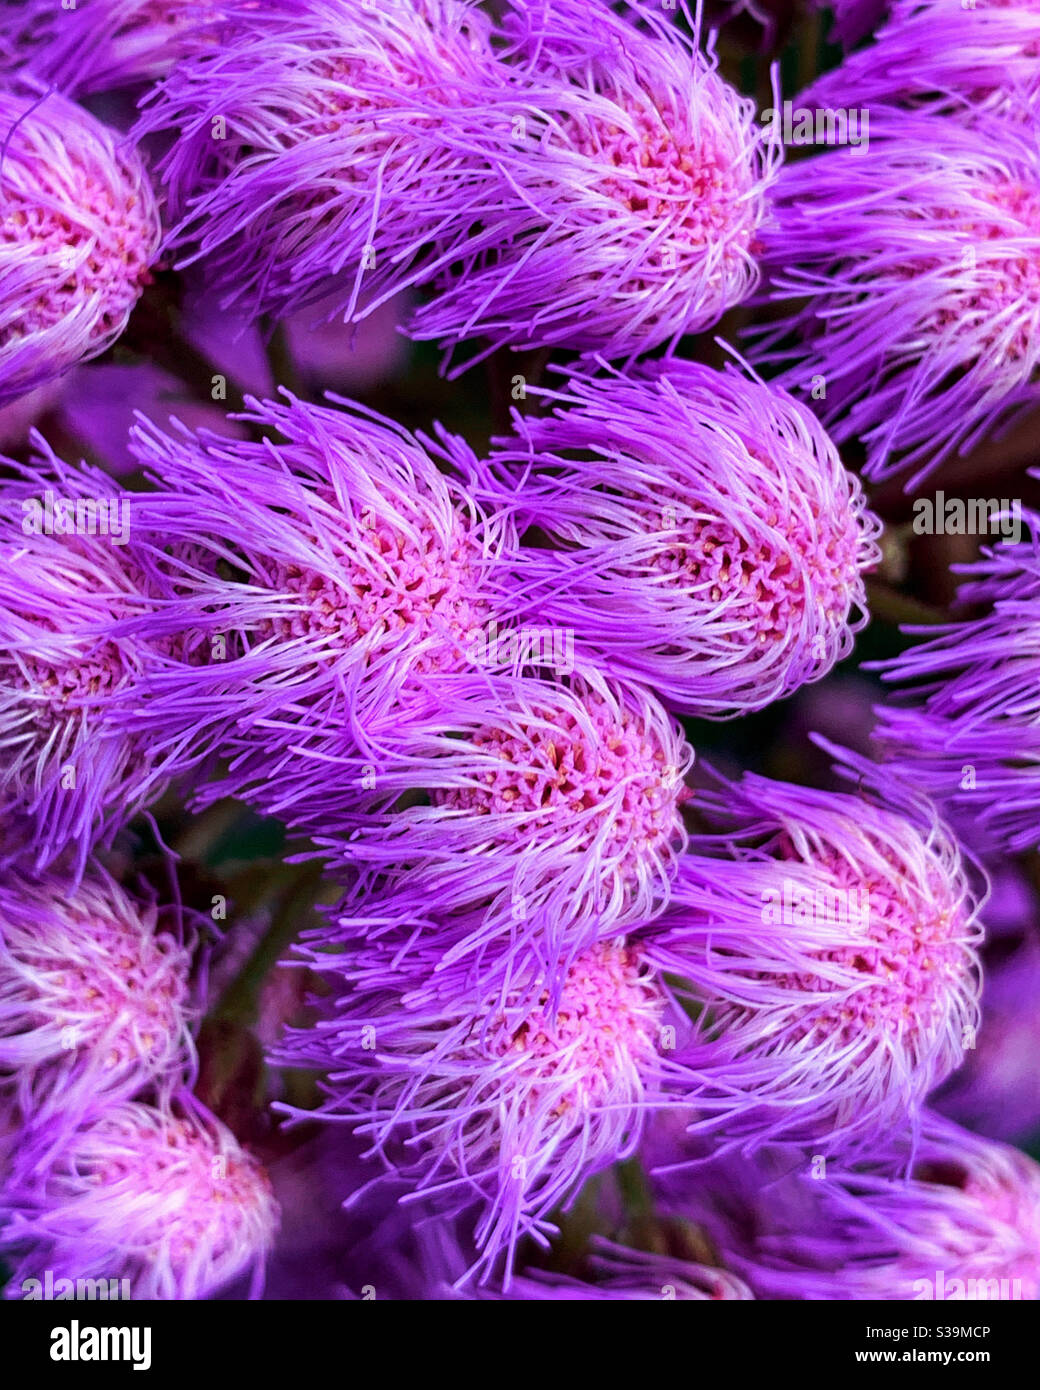 Verrückte lila rosa Blüten, wie eine Masse von Federduster oder fremde Kreaturen, die im Wind wehen und lila verdunkeln Stockfoto